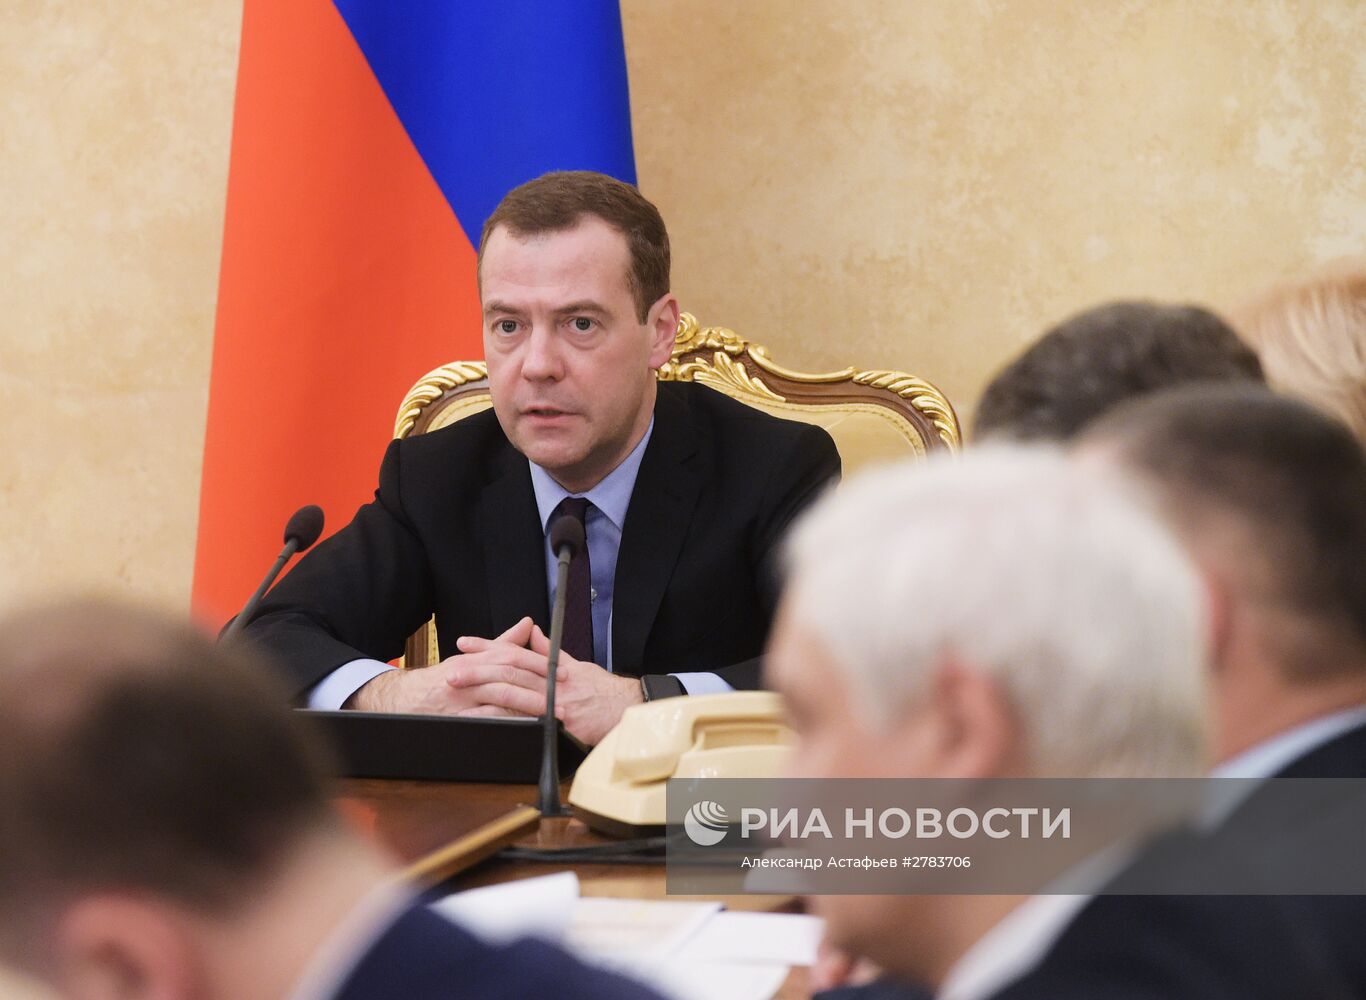 Премьер-министр Д. Медведев провел совещание по финансово-экономическим вопросам